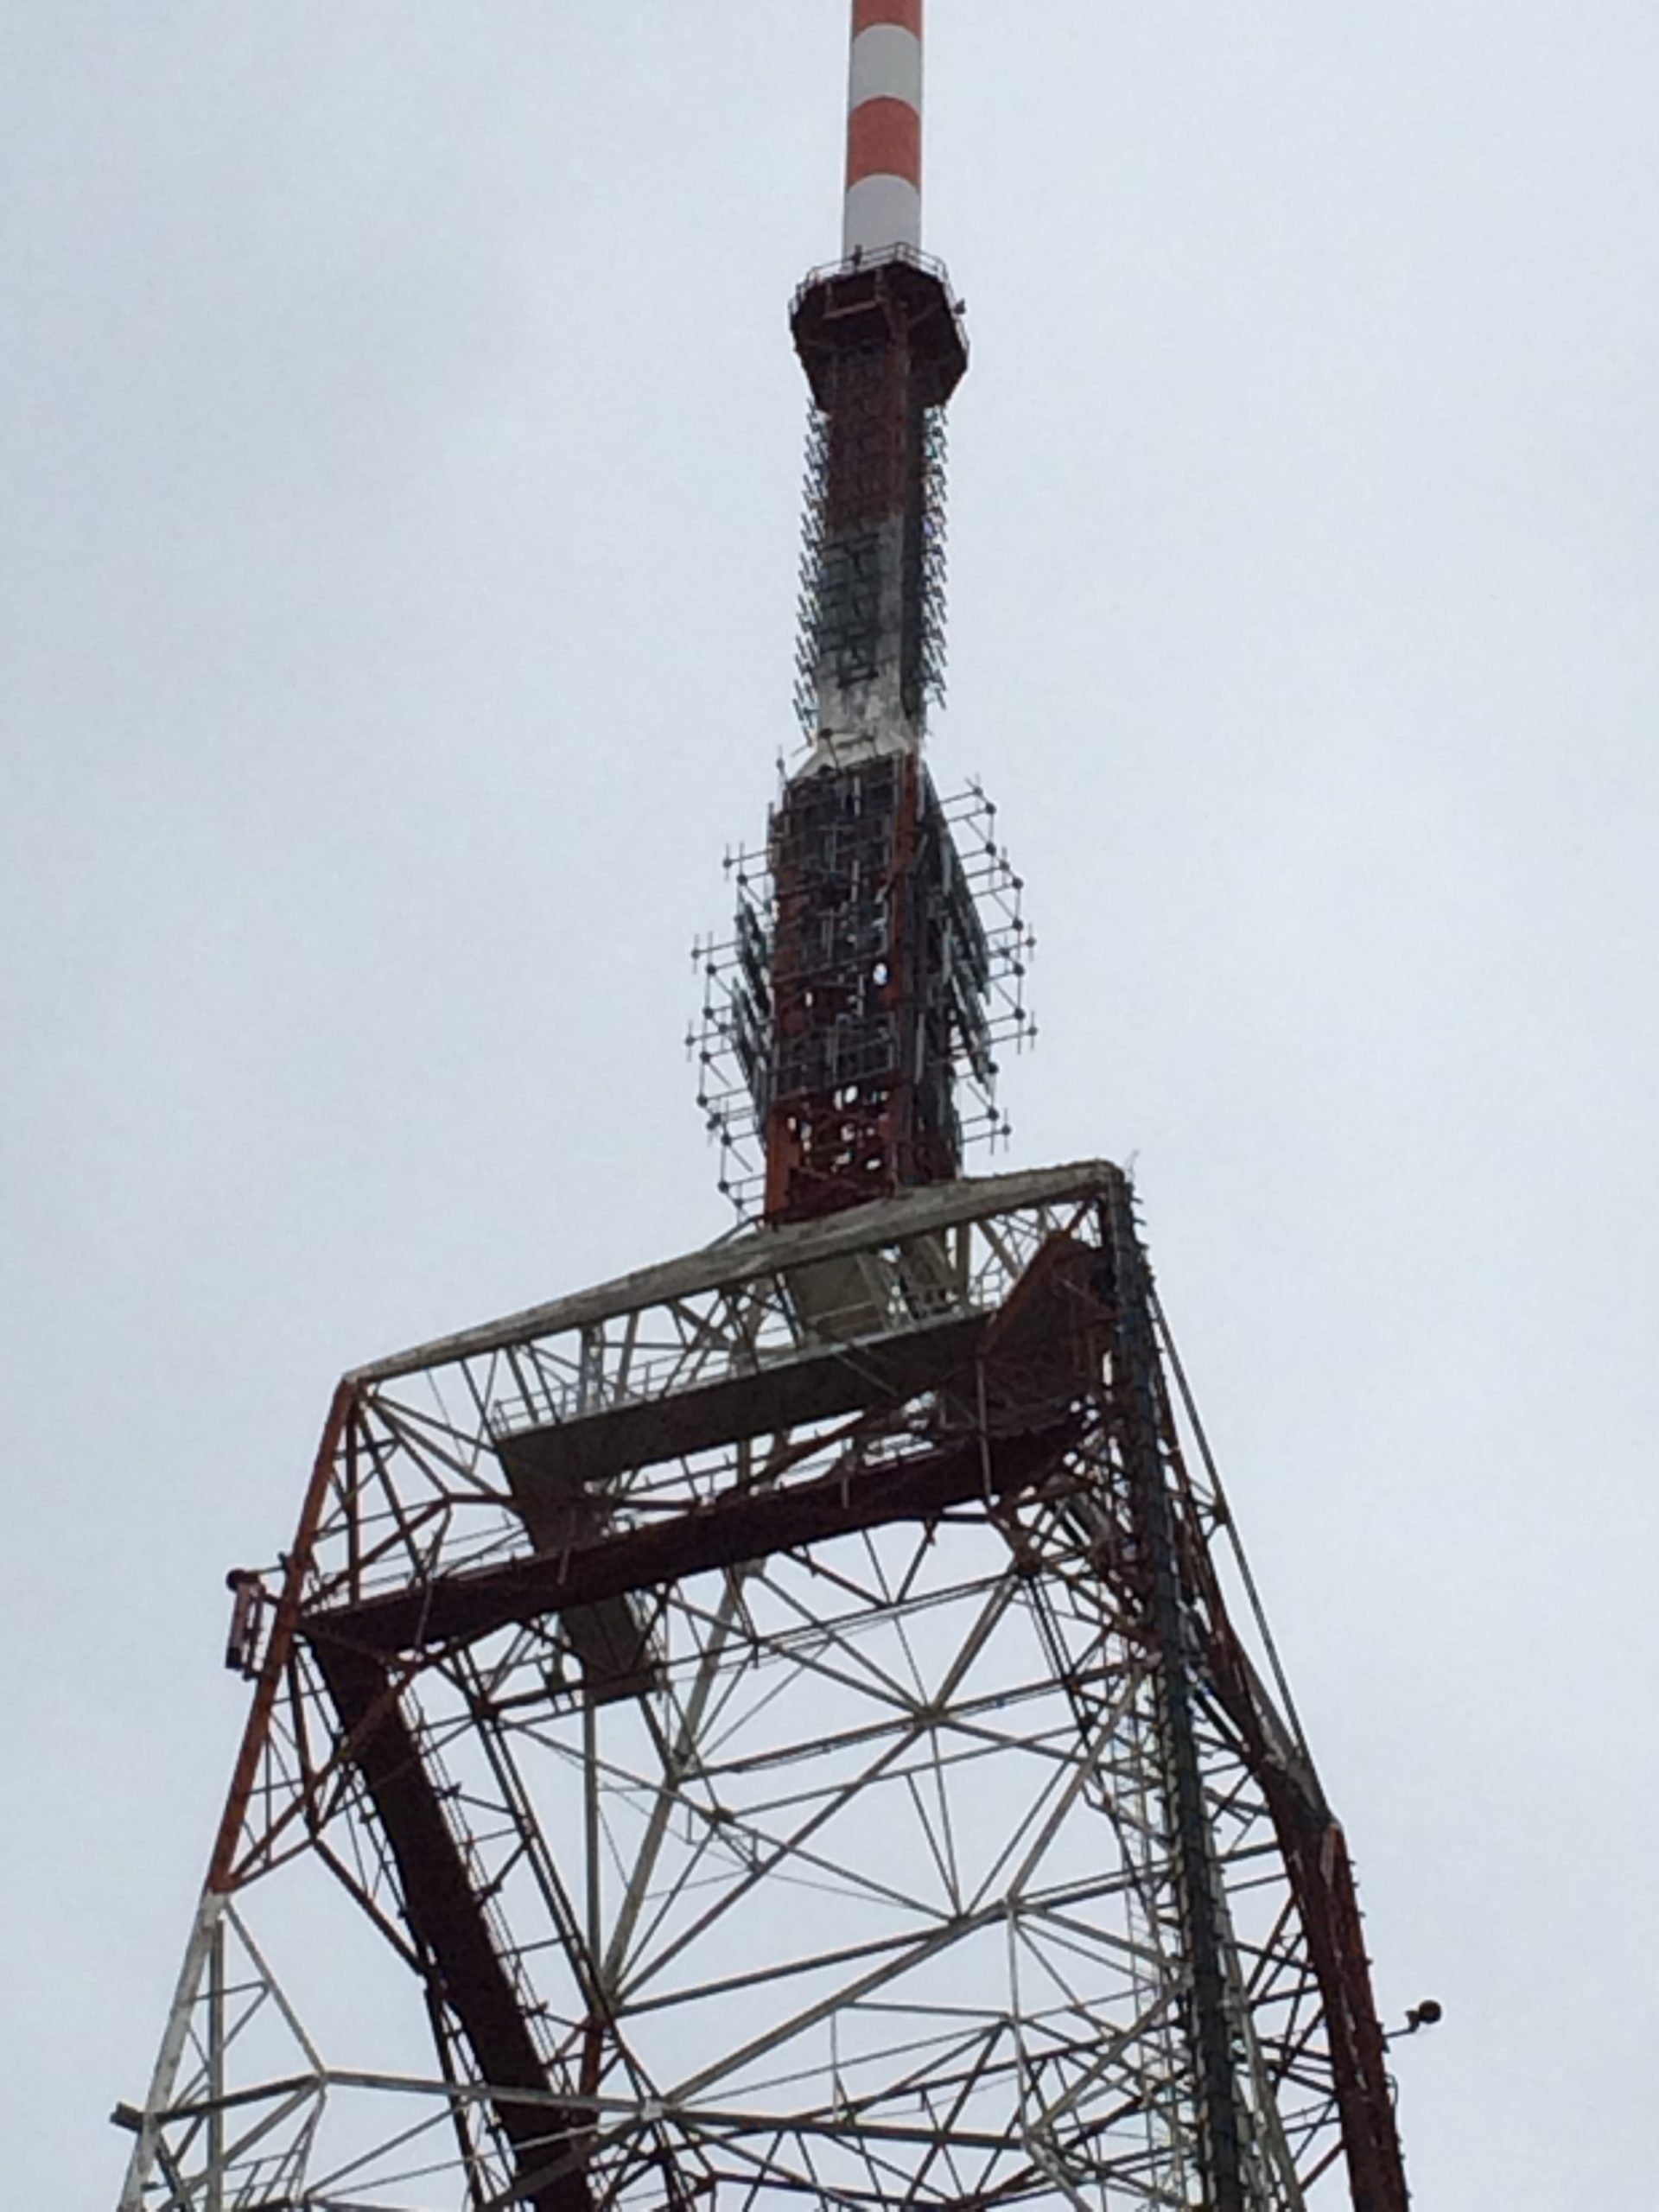 New FM antenna system at Martina Franca station, Martina Franca, Italy